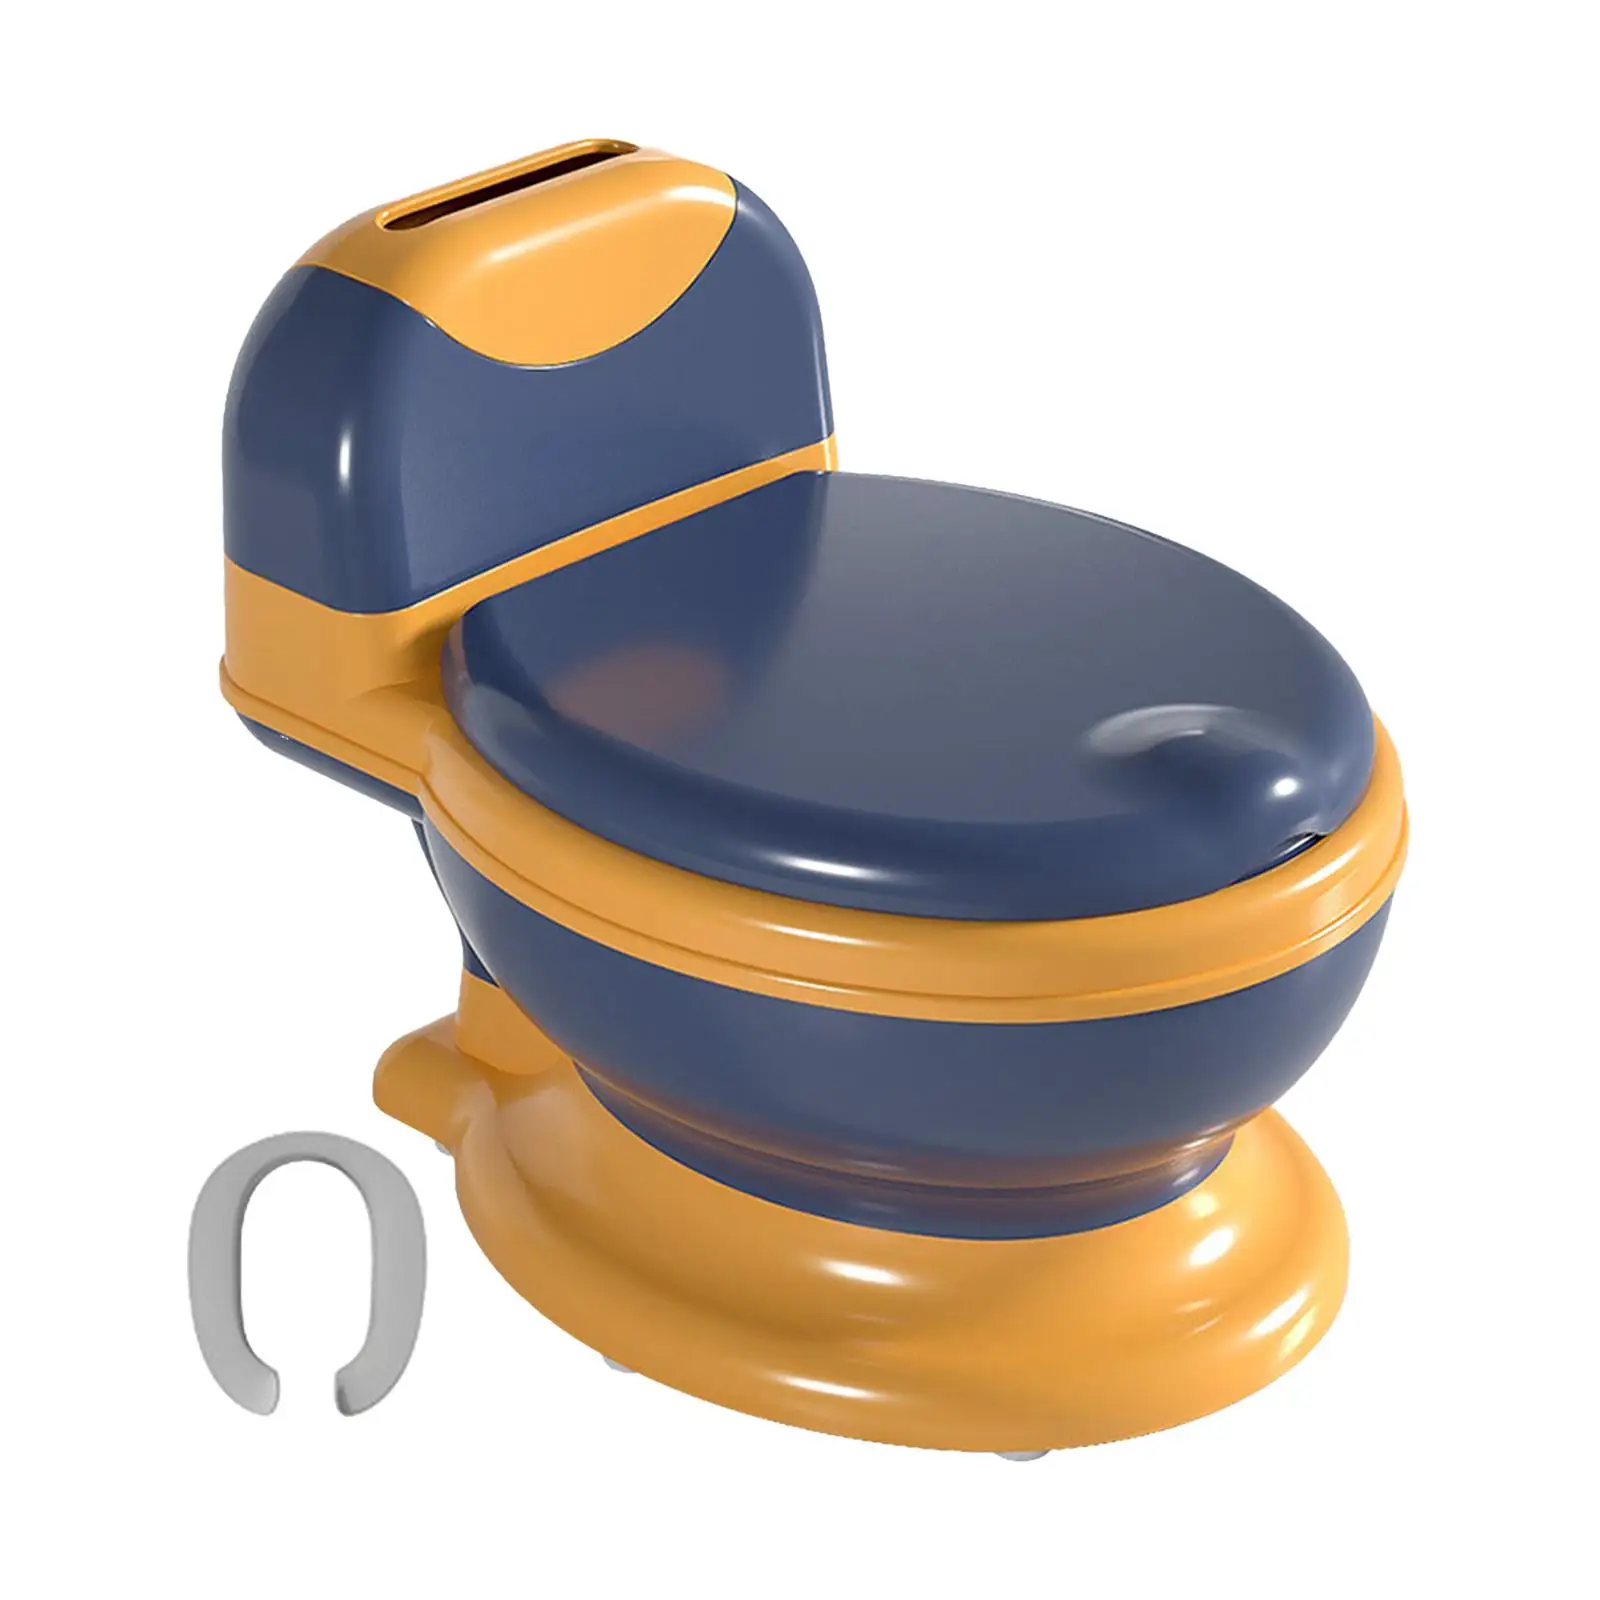 Potty Train Toilet Removable Potty Pot Portable Toilet Training Seat Potty Seat Toddlers Potty Chair for Baby Boys Girls Kids